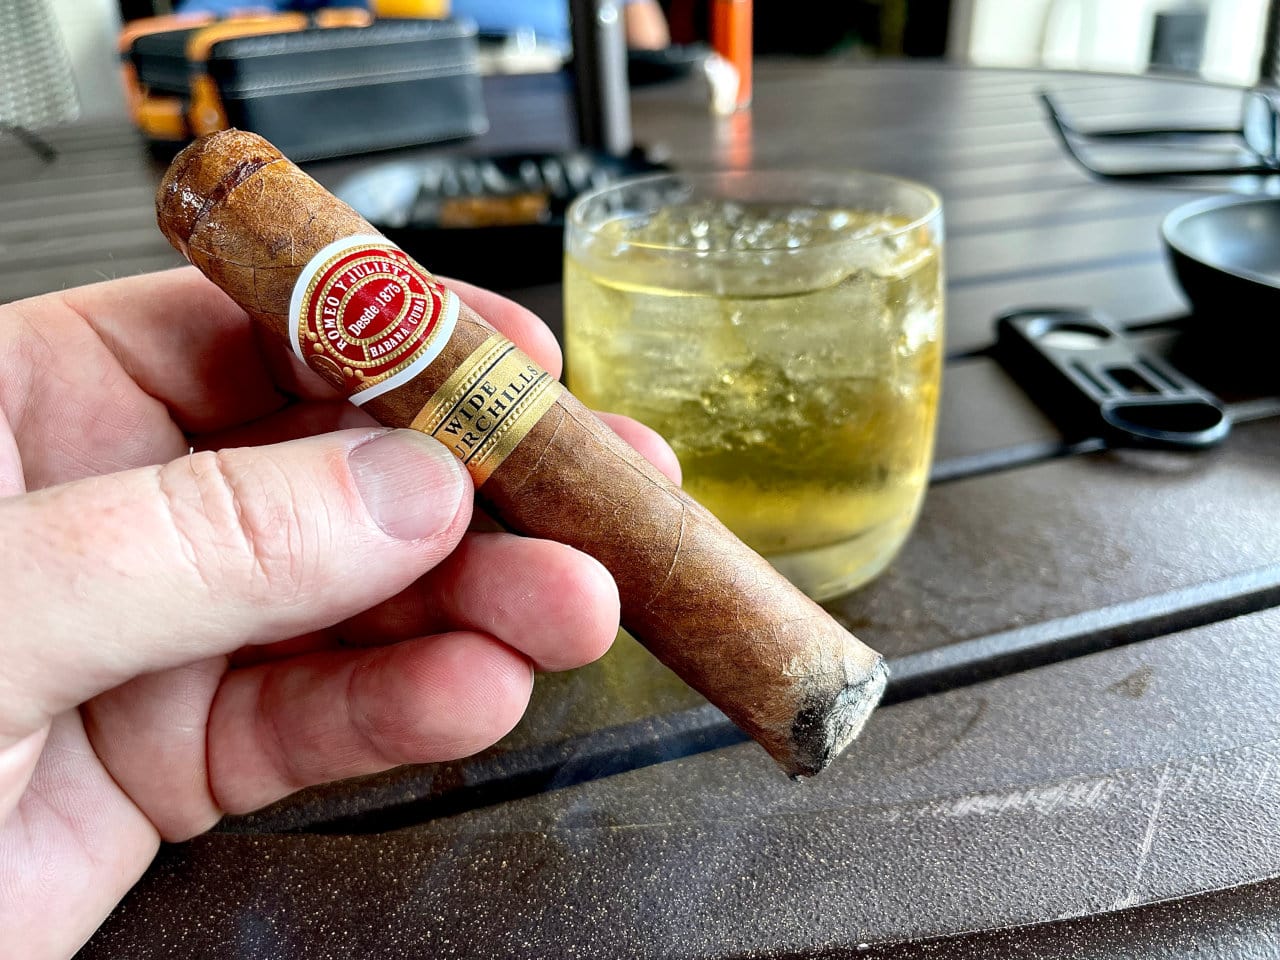 Cuban Cigars 5